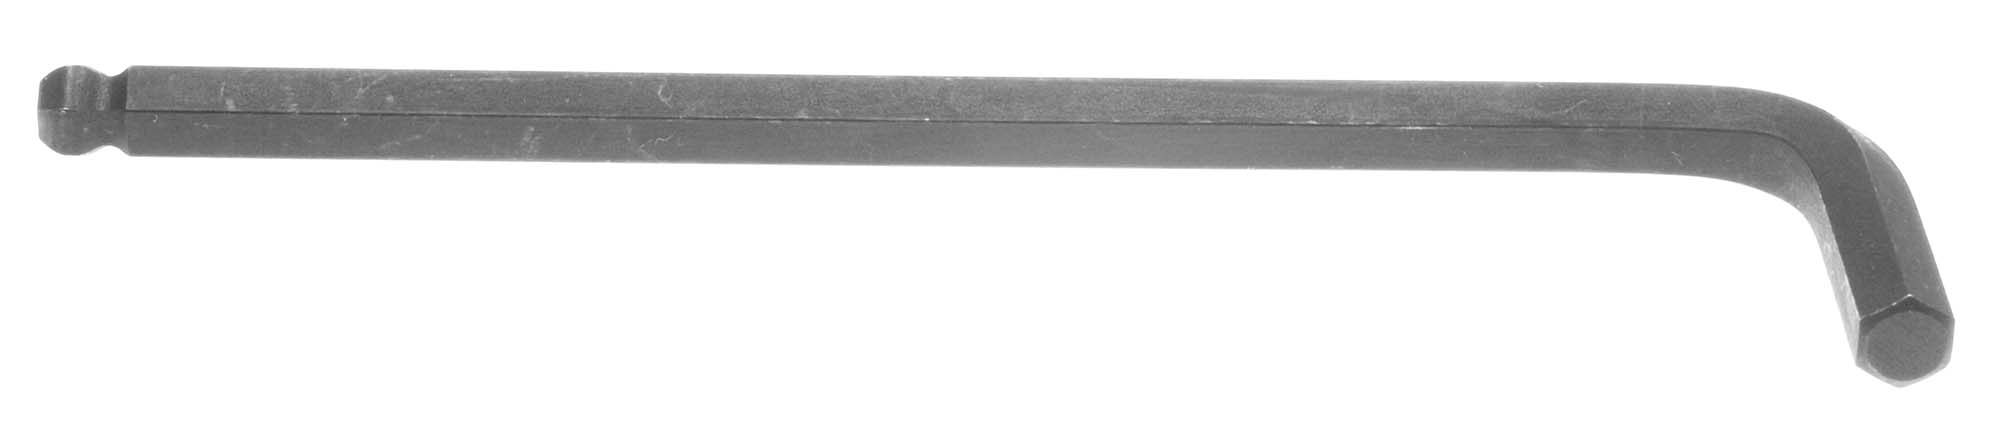 1/8" Bondhus Balldriver L-Wrench Hex Key